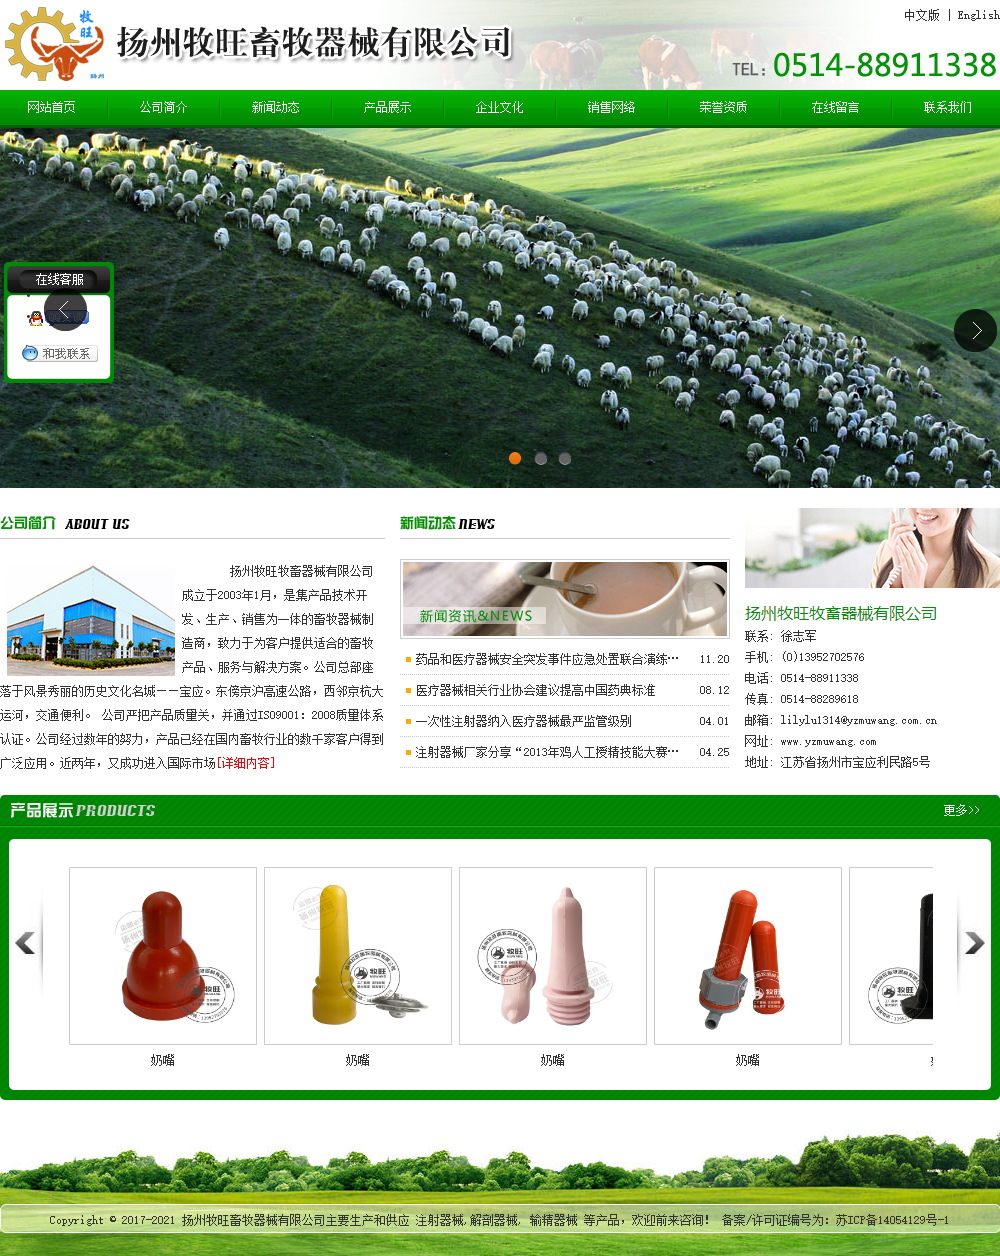 扬州牧旺畜牧器械有限公司网站案例